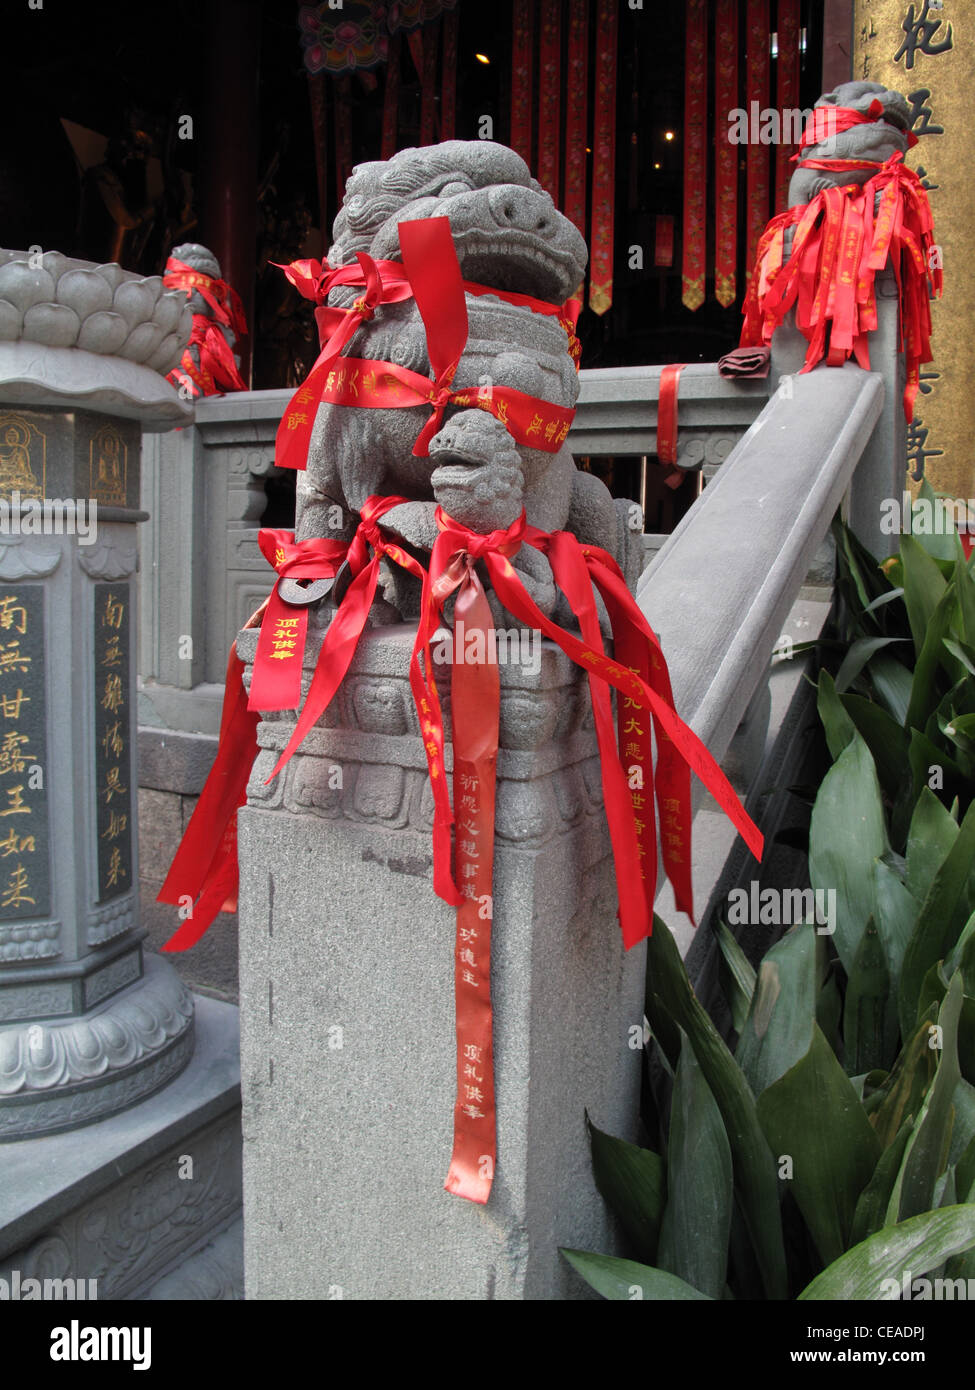 Les lions en pierre avec rubans souhaite lié à leur sujet dans un temple chinois Banque D'Images